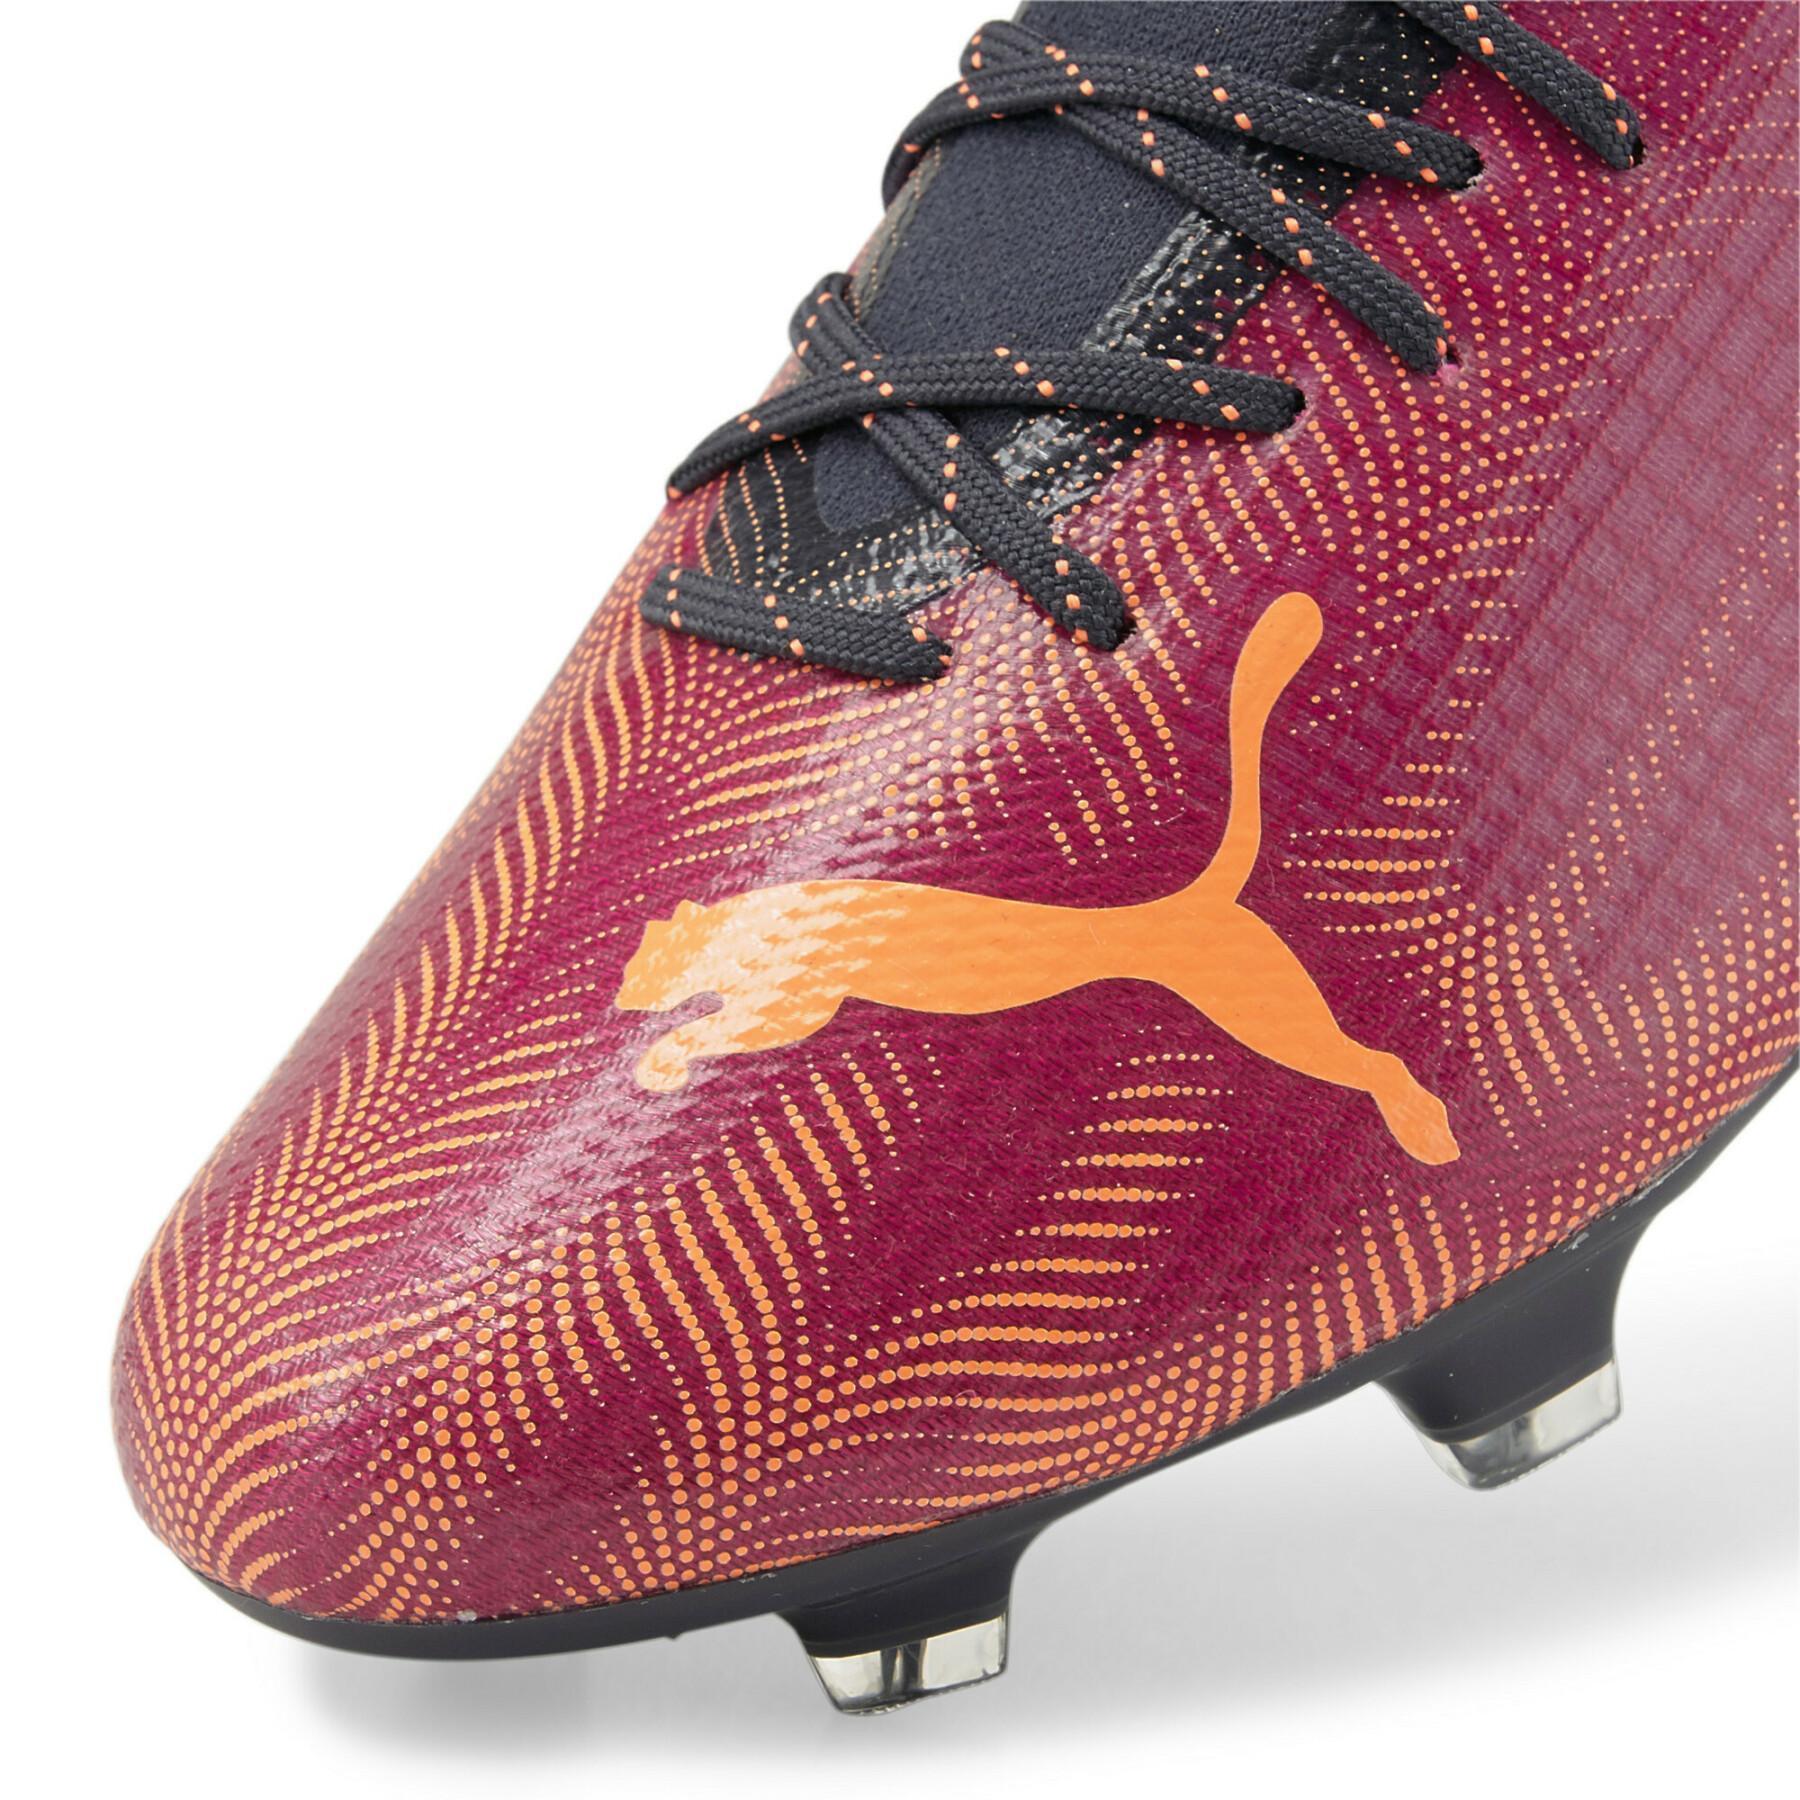 Soccer shoes Puma Ultra 2.4 FG/AG